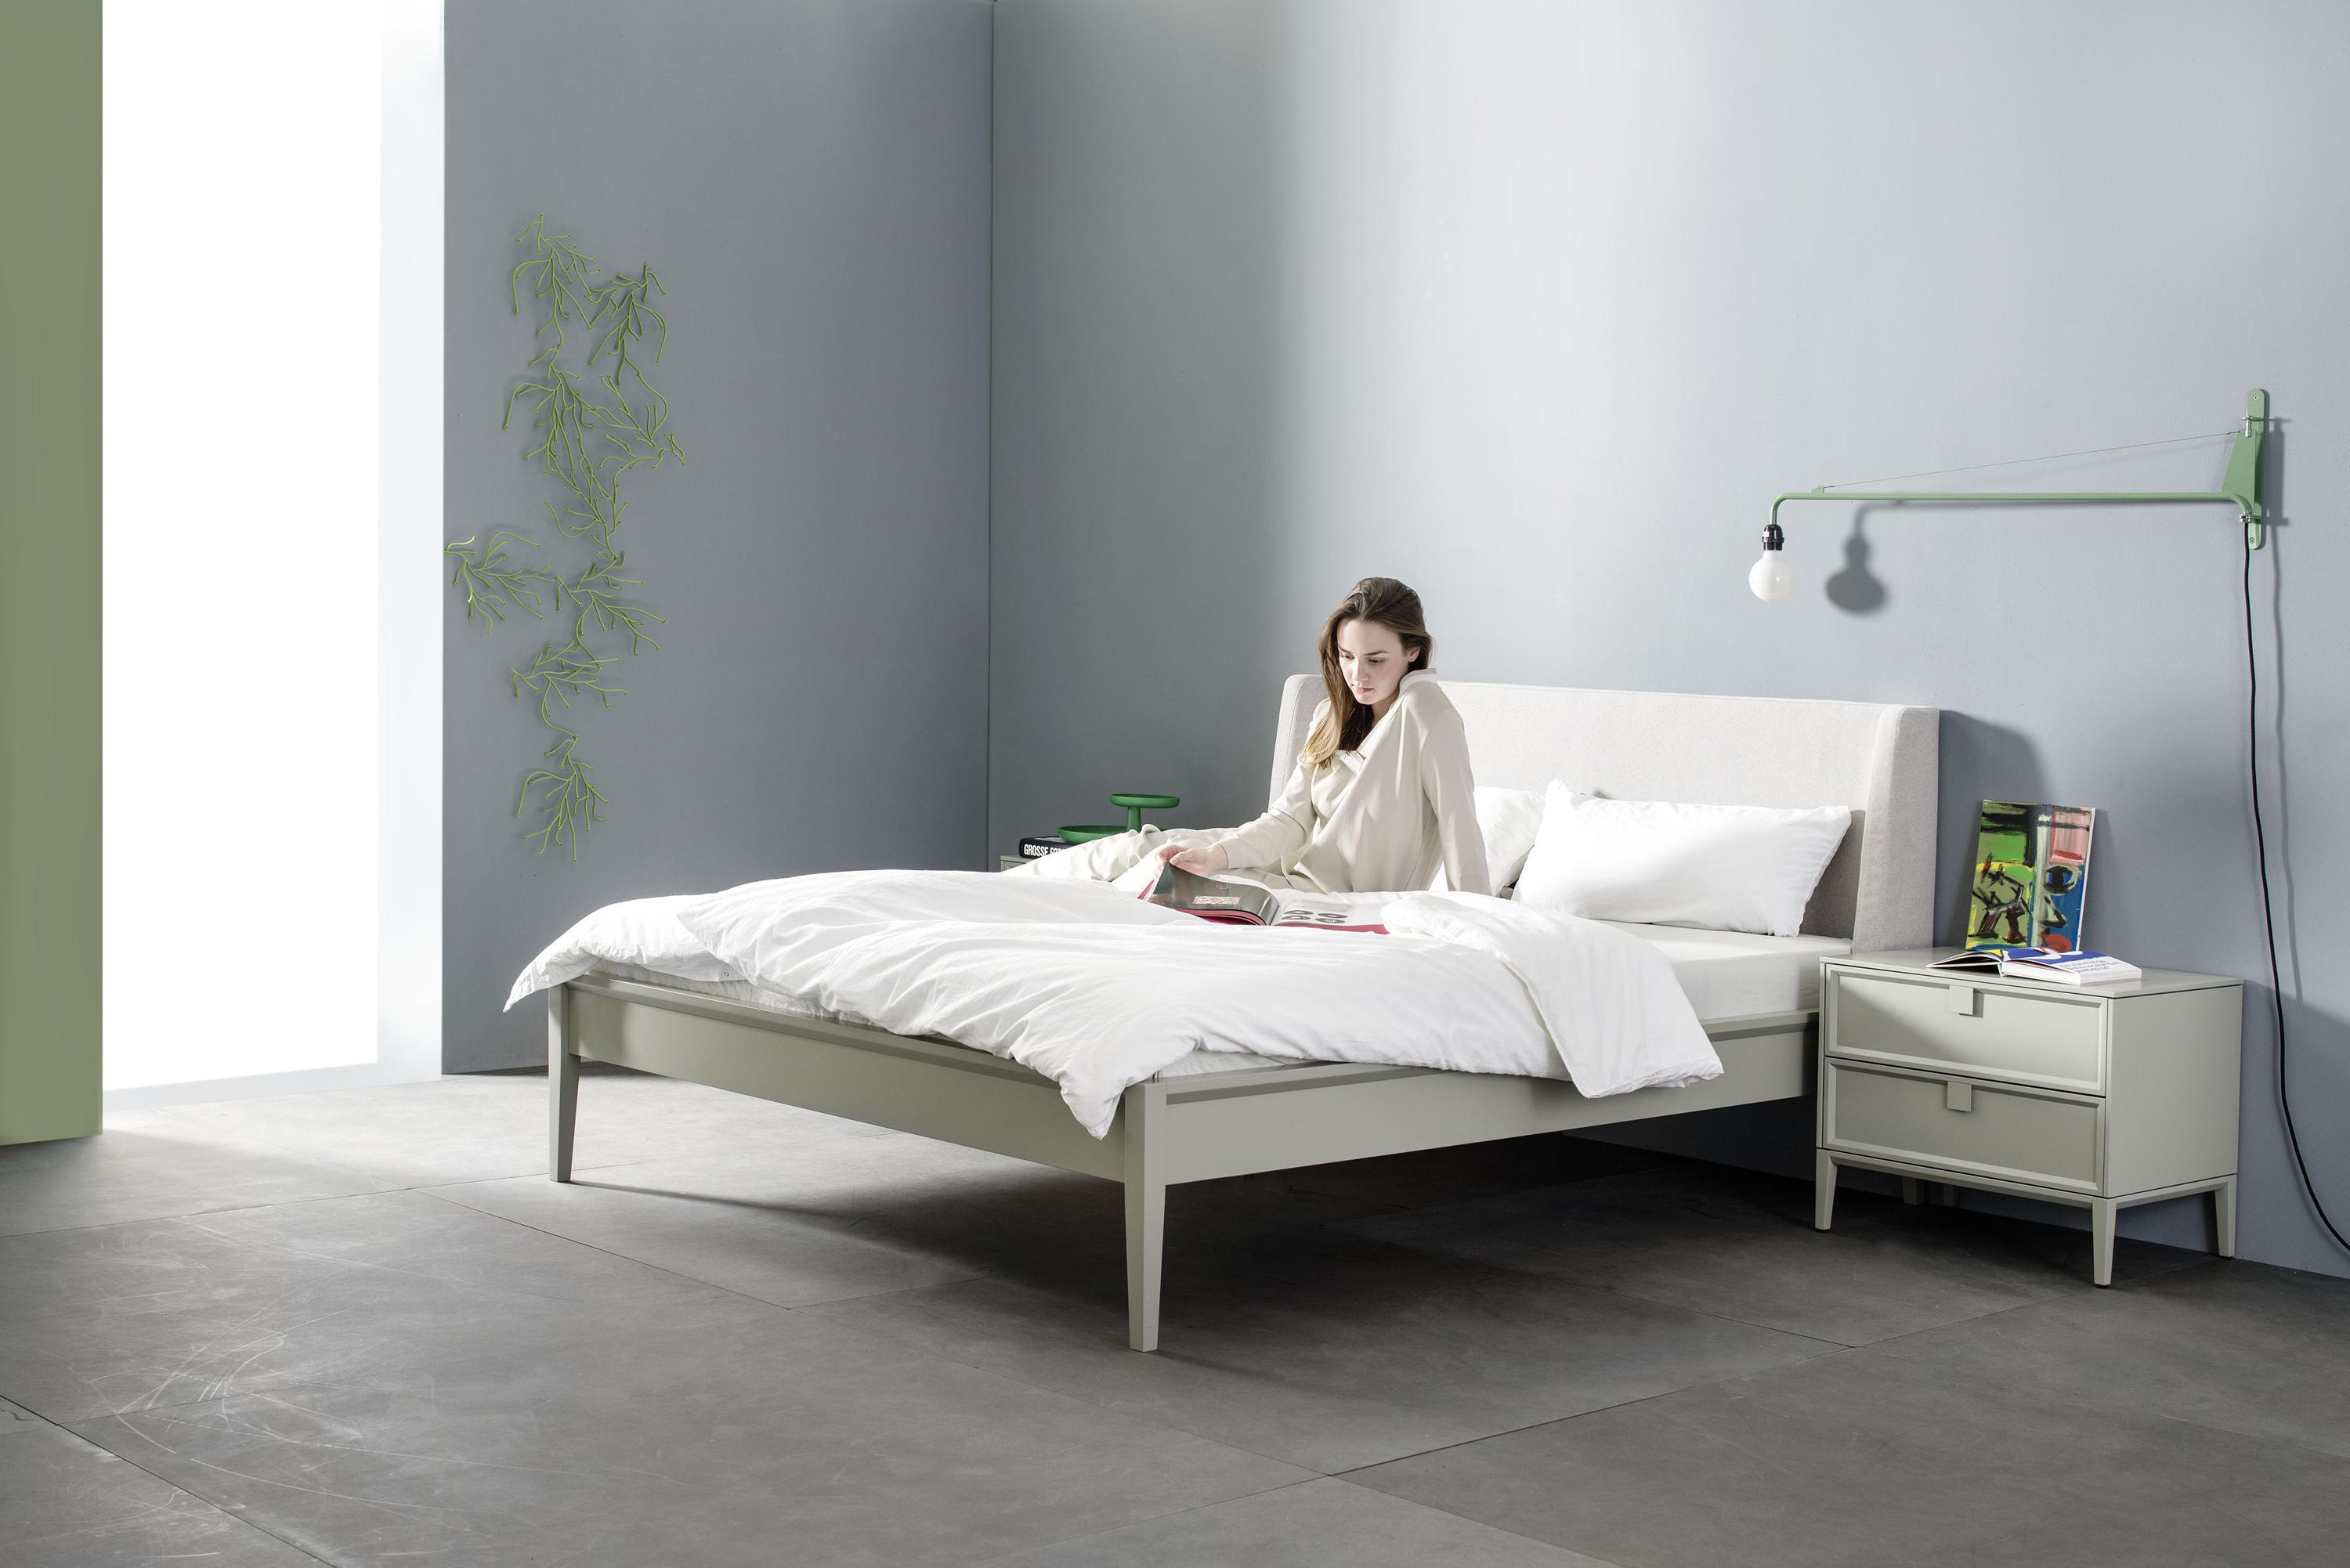 Artayo sleeping & designer furniture